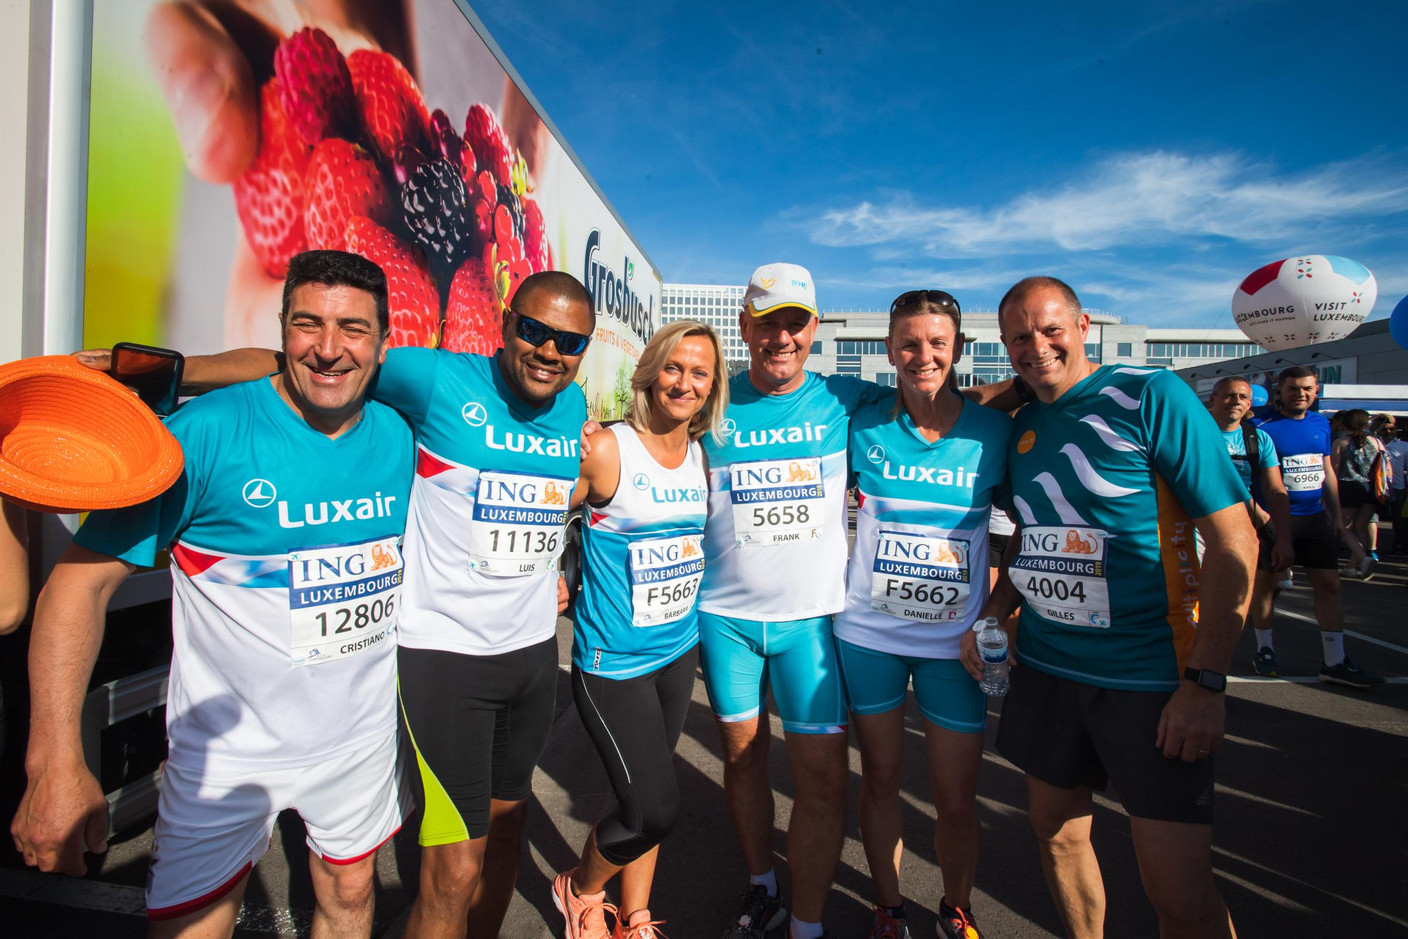 L’équipe de Luxair était présente sur la ligne de départ pour la 14e édition de l’ING Night Marathon Luxembourg. (Photo: Nader Ghavami)